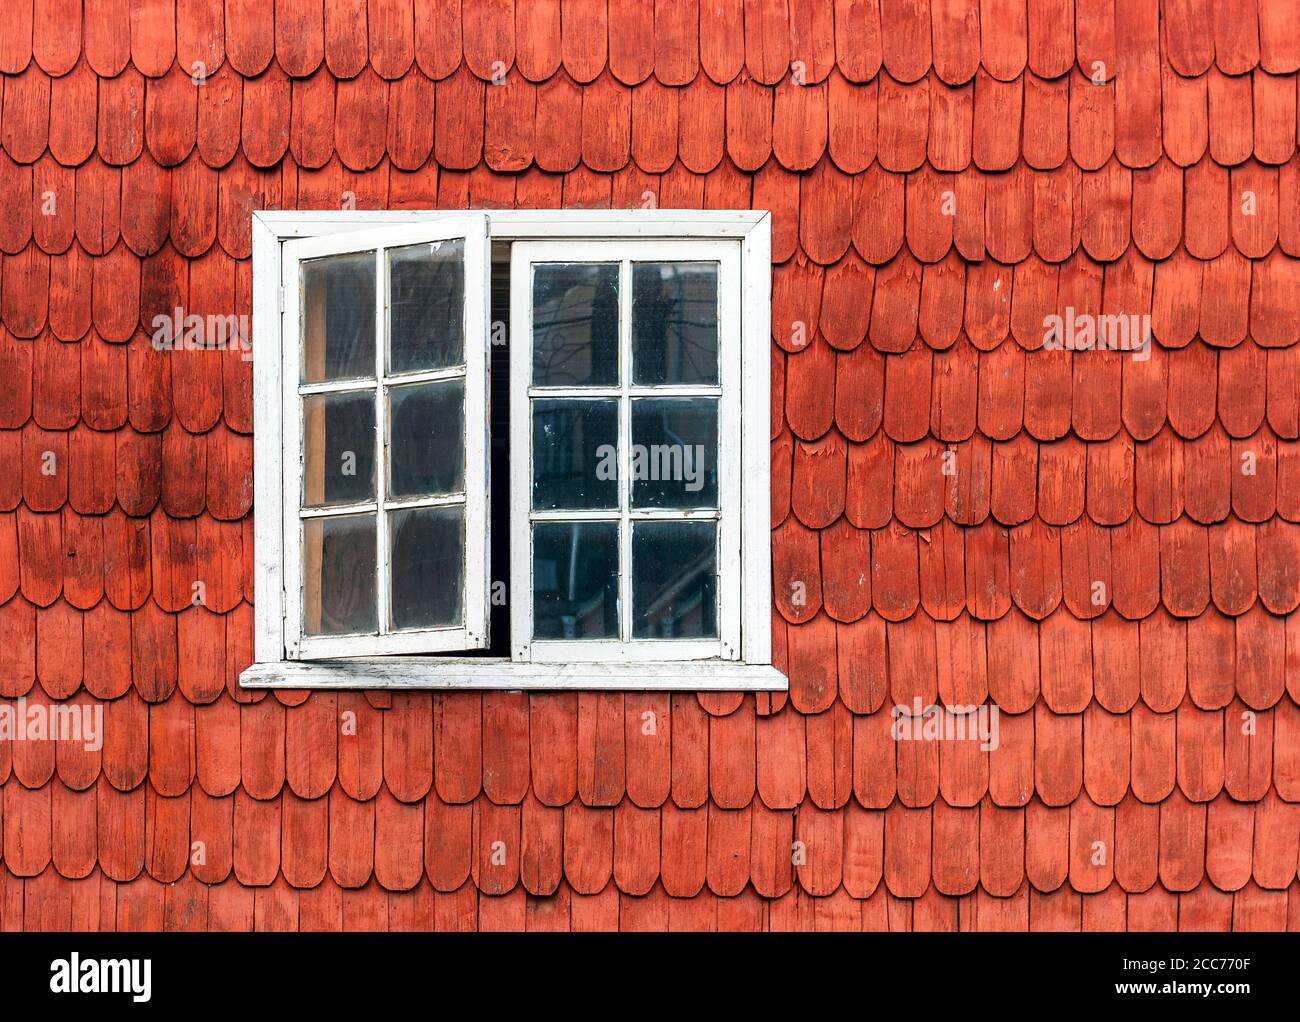 Construction traditionnelle de logements dans le quartier des lacs du Chili en bois de mélèze avec une façade et une fenêtre ouverte, Castro, île Chiloe, Chili. Banque D'Images